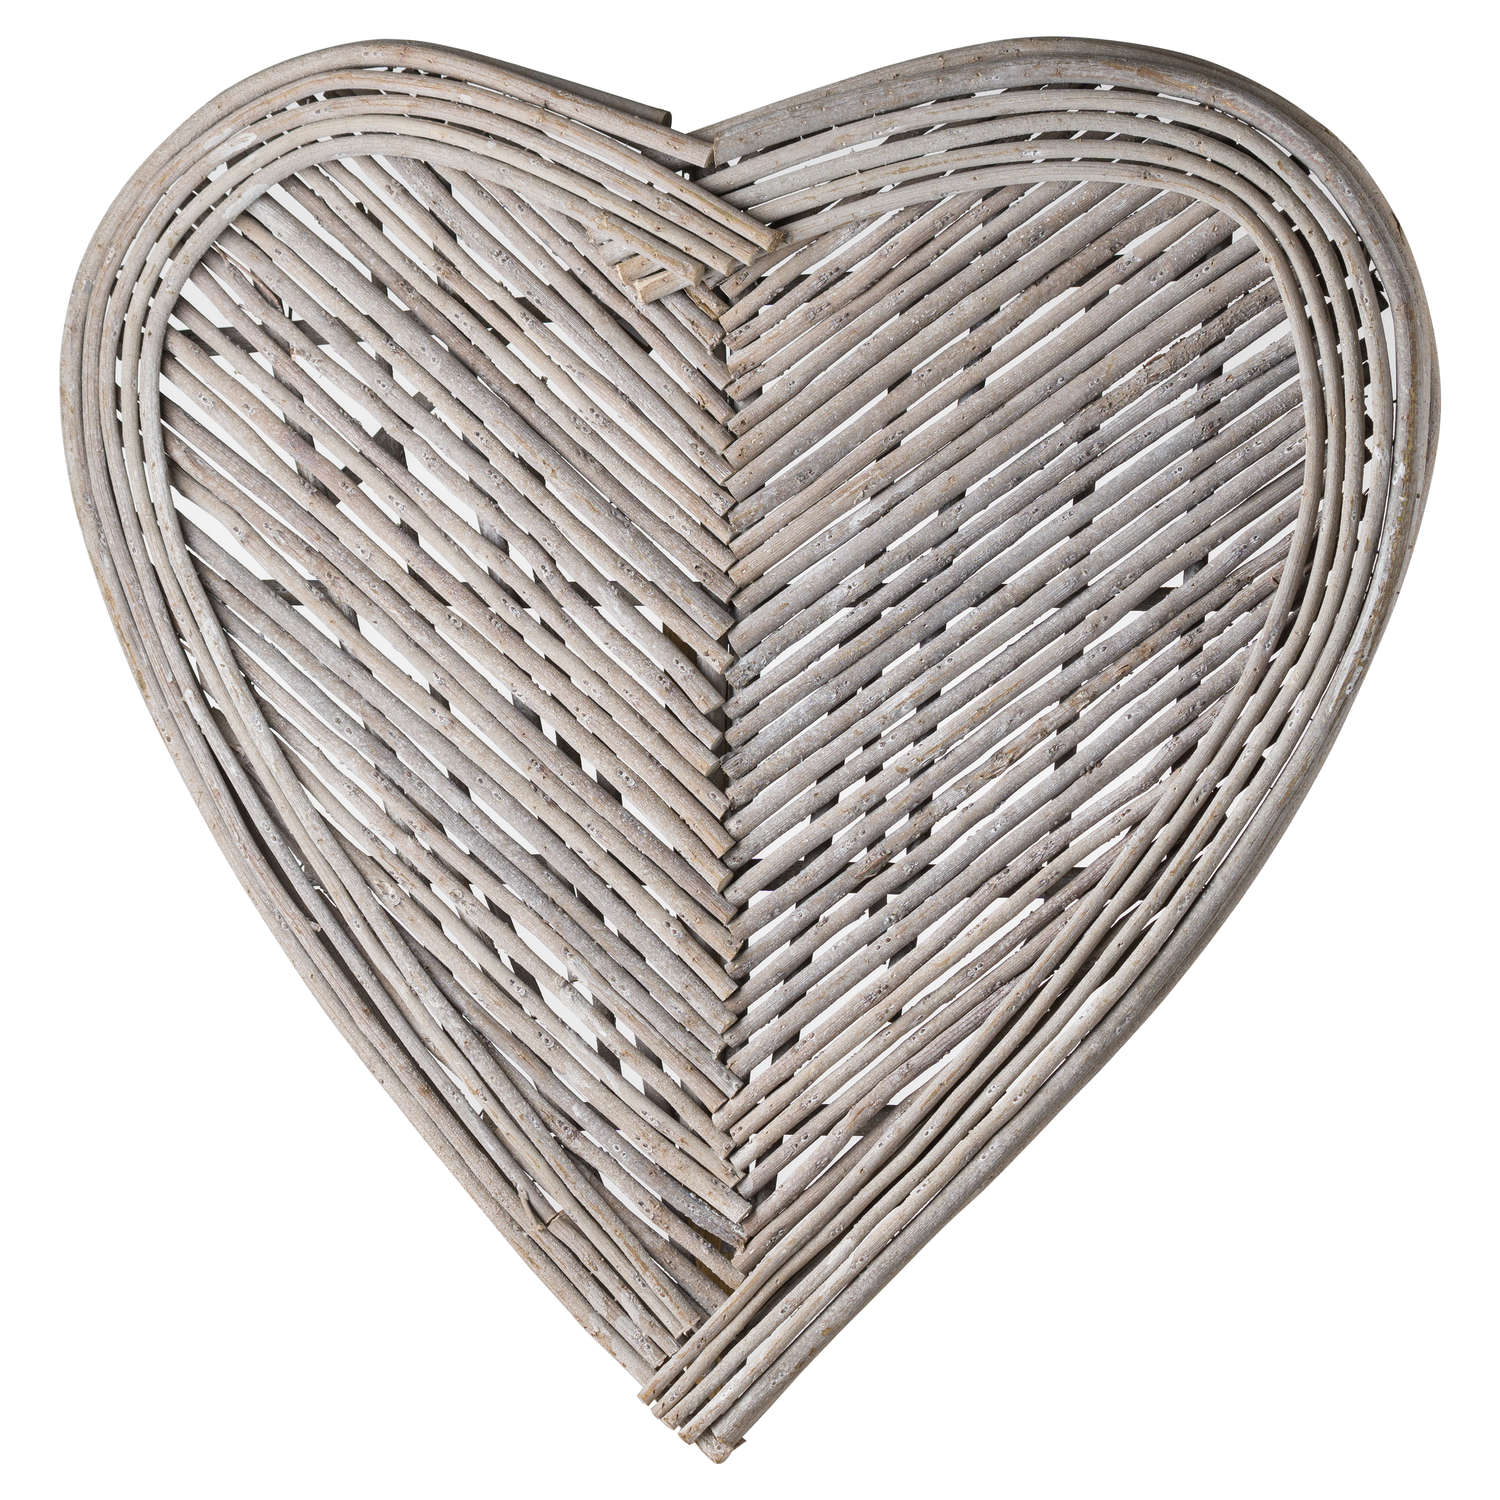 Medium Heart Wicker Wall Art